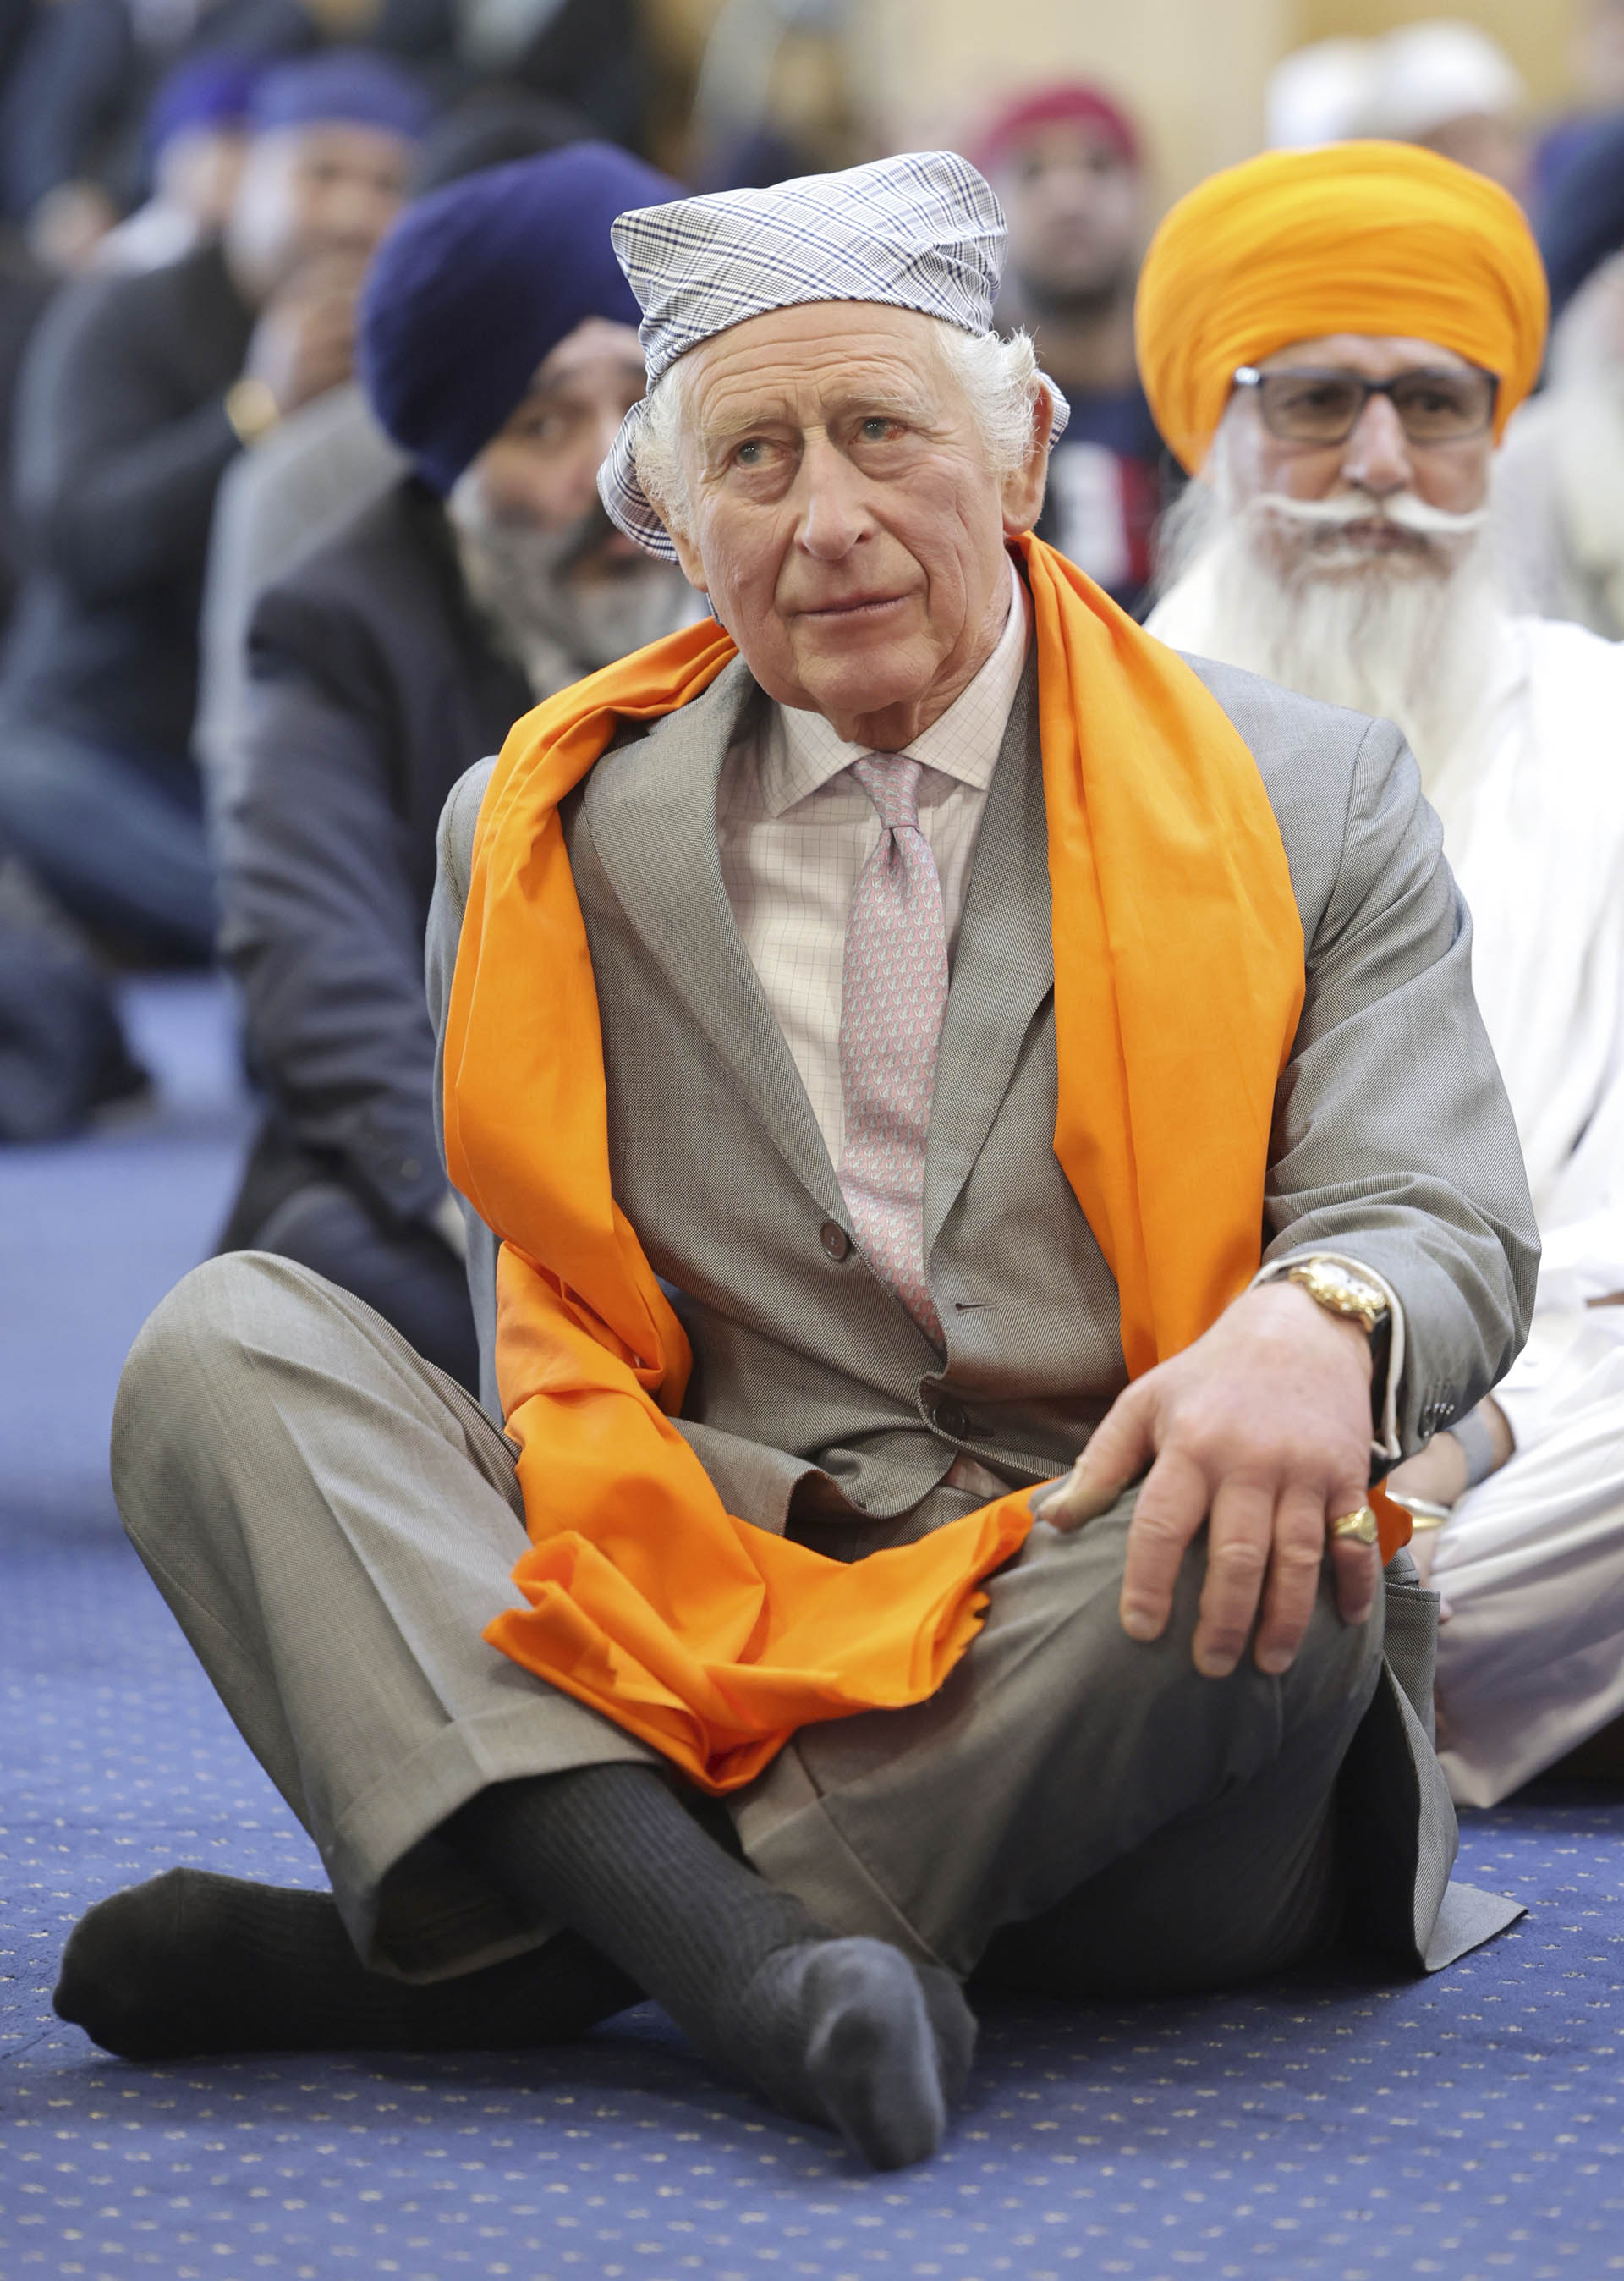 ARCHIVO - El rey Carlos III de Gran Bretaña se sienta en el piso de la Sala de oración durante una visita al recién construido Guru Nanak Gurdwara, en Luton, Inglaterra, el martes 6 de diciembre de 2022. (Chris Jackson/Pool Photo vía AP, archivo)
